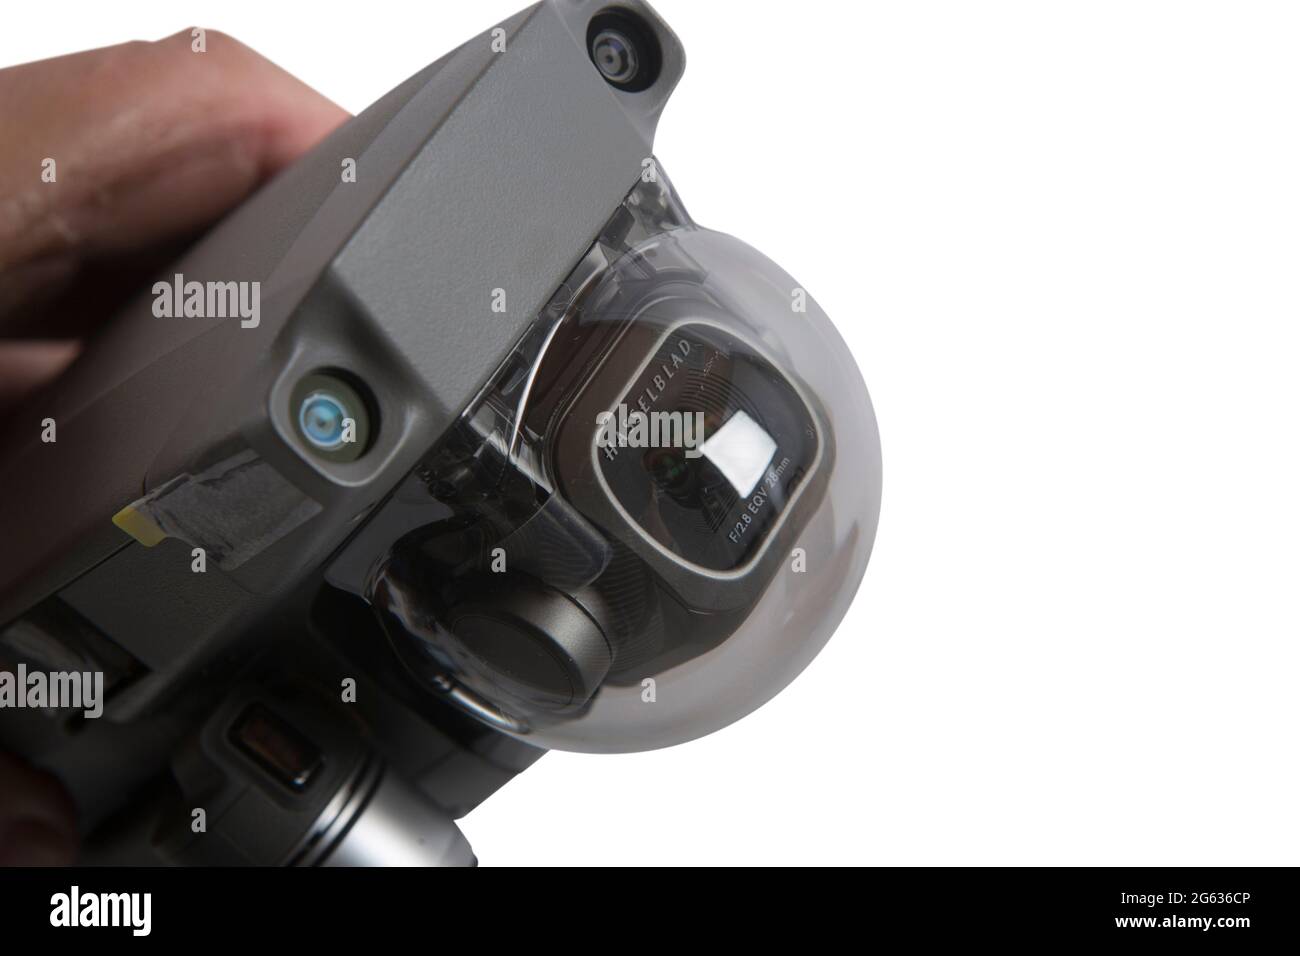 Dohne DJI Mavic 2 Pro mit Hasselblad Kamera für 4K Videoaufnahmen und 20MB Fotoaufnahmen. Die Drohne zählt zu den Flugapparaten mit den qualitativ hoc Stock Photo